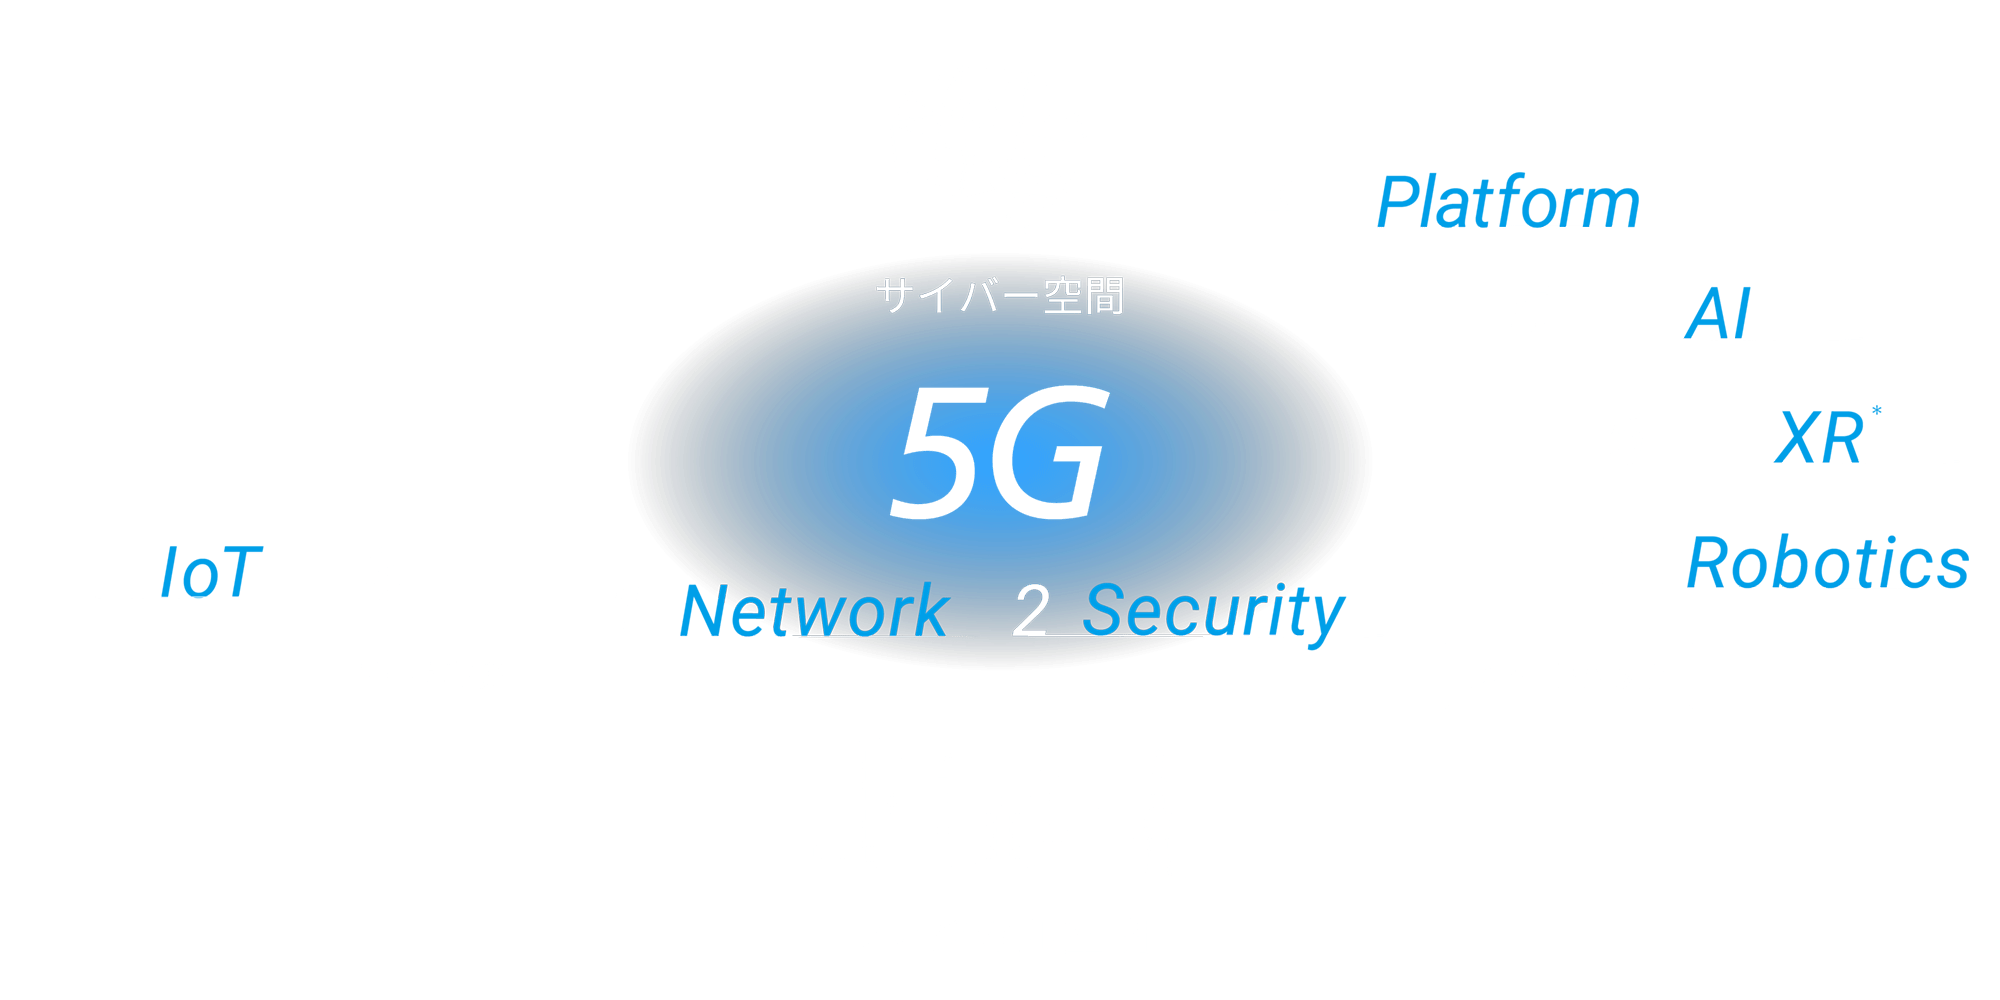 7つの分野のテクノロジーとオーケストレーション 1.Network 2.Security 3.IoT データ（収集）→ サイバー空間 データ分析・学習・予測 → 4.Platform 5.AI 6.XR* 7.Robotics